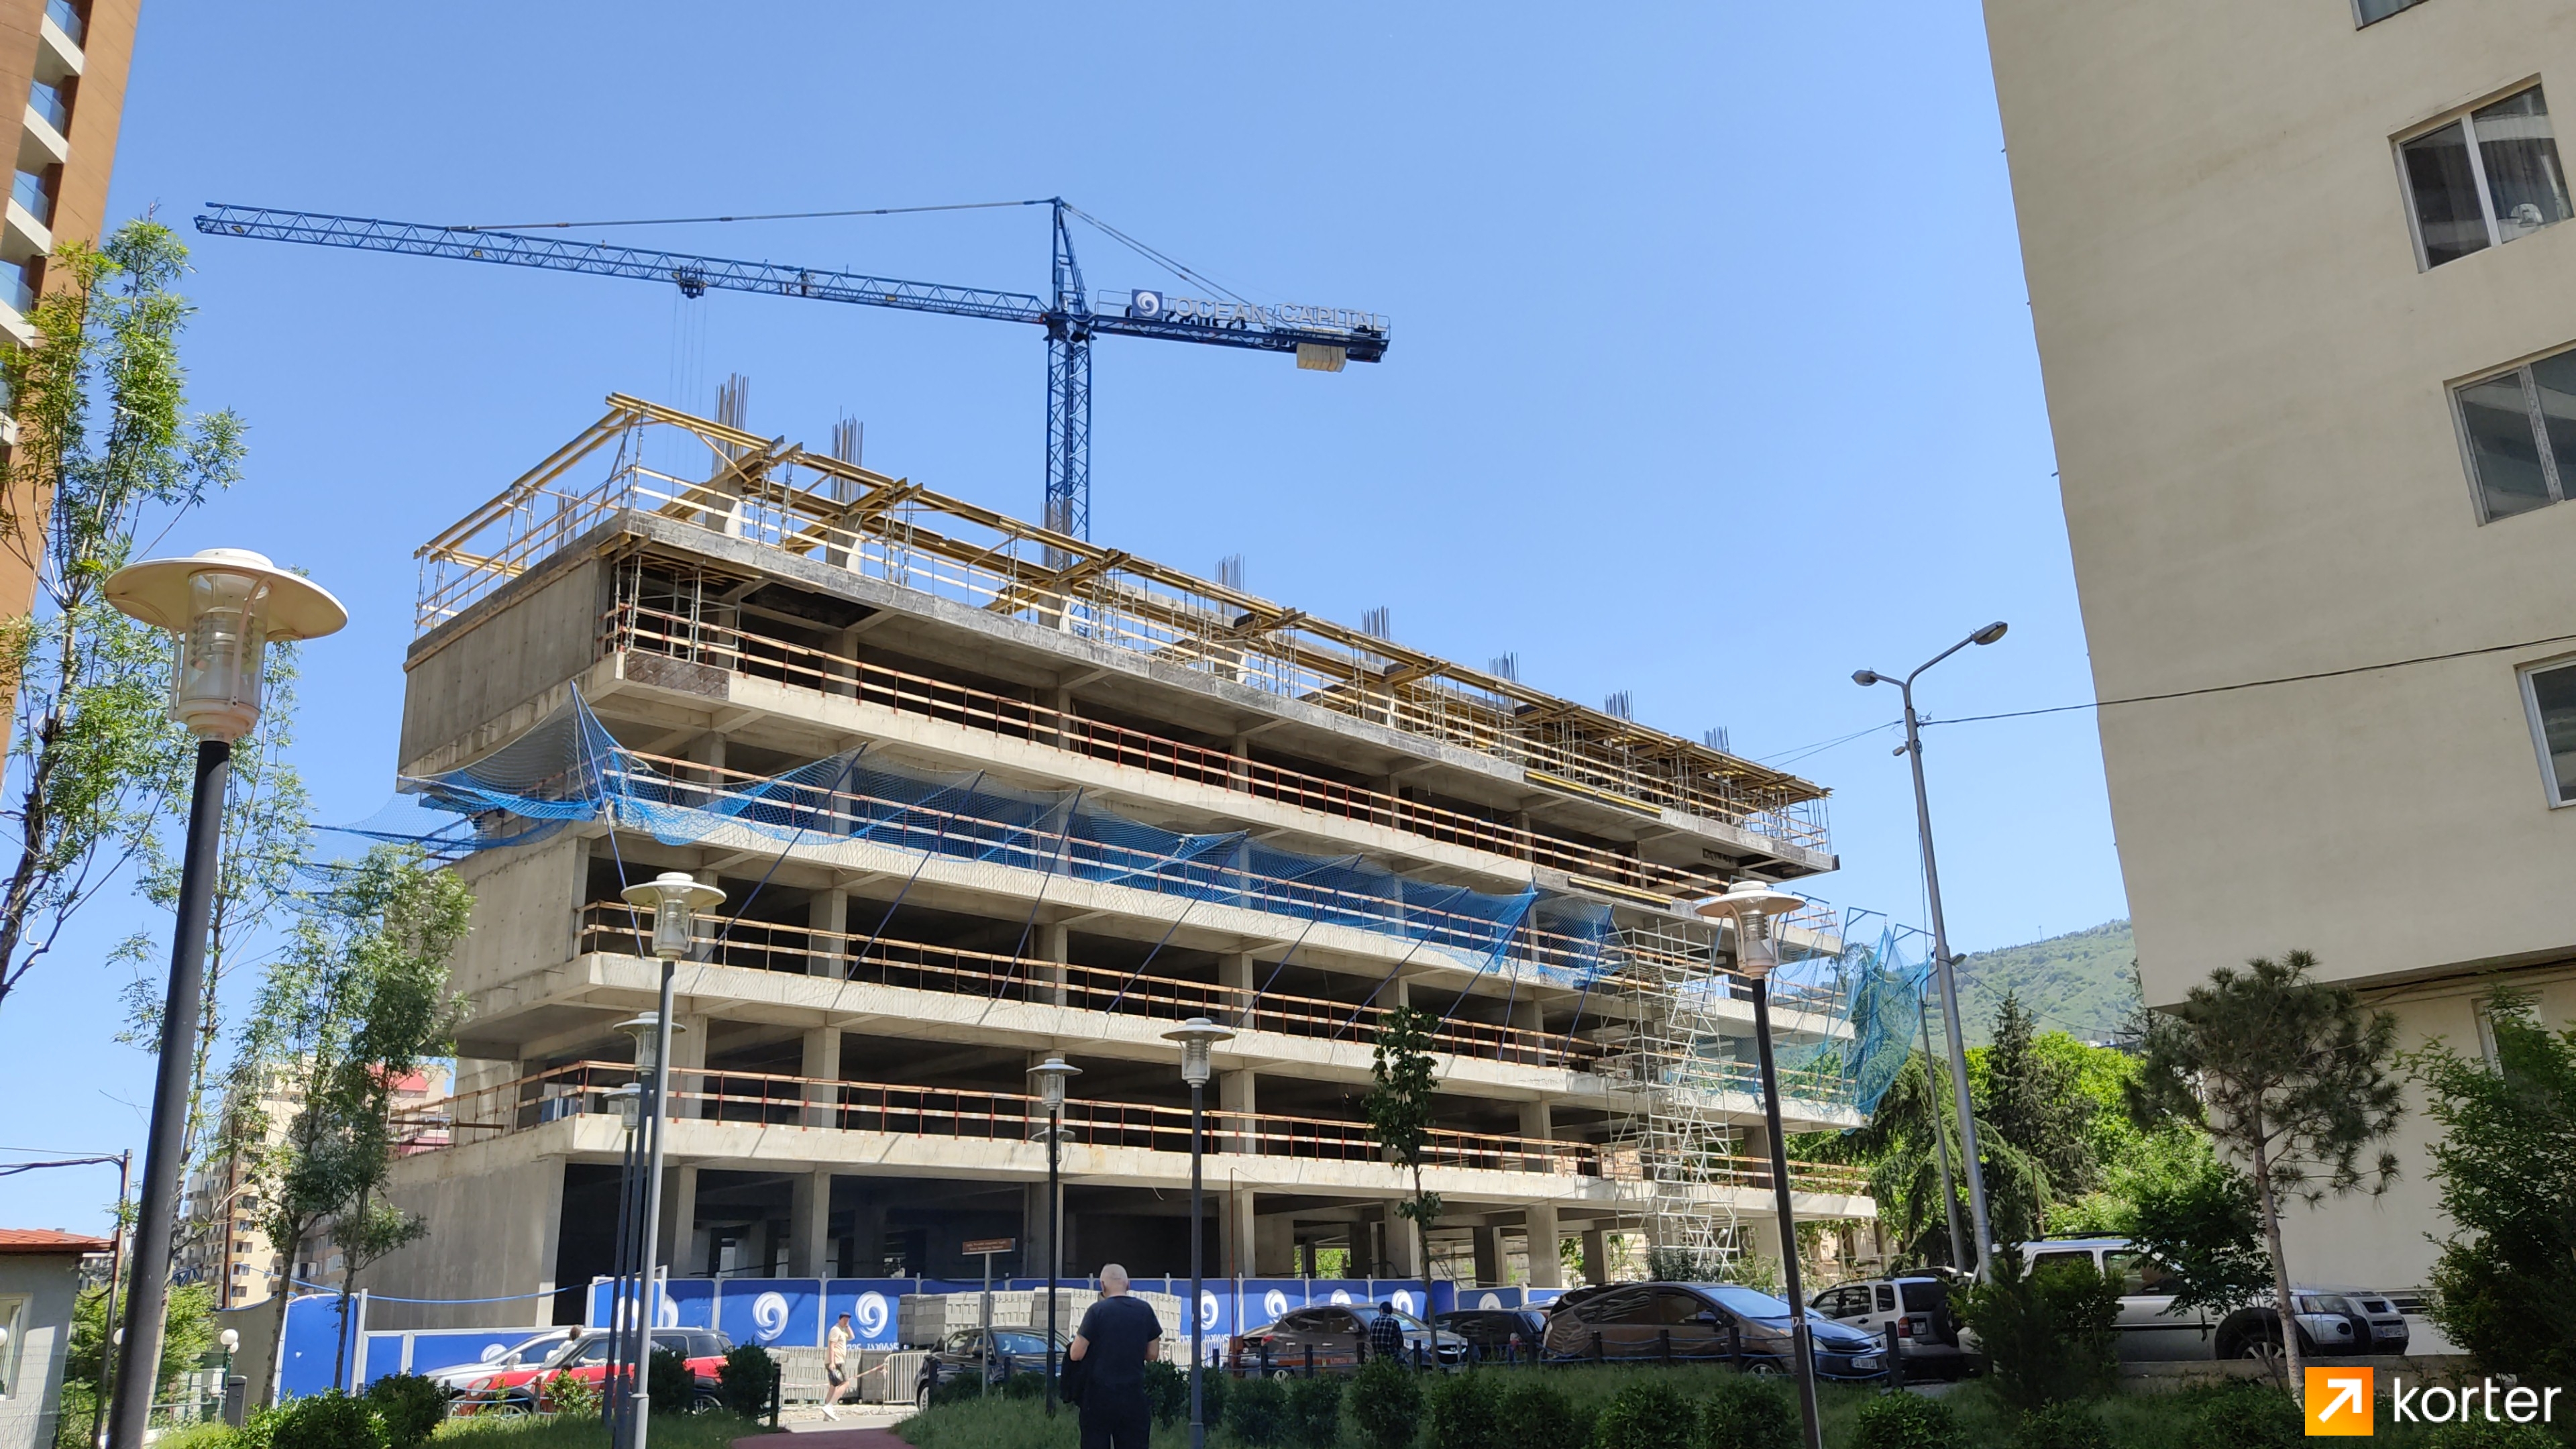 Construction progress Ocean Sky Residence - Angle 3, May 2022